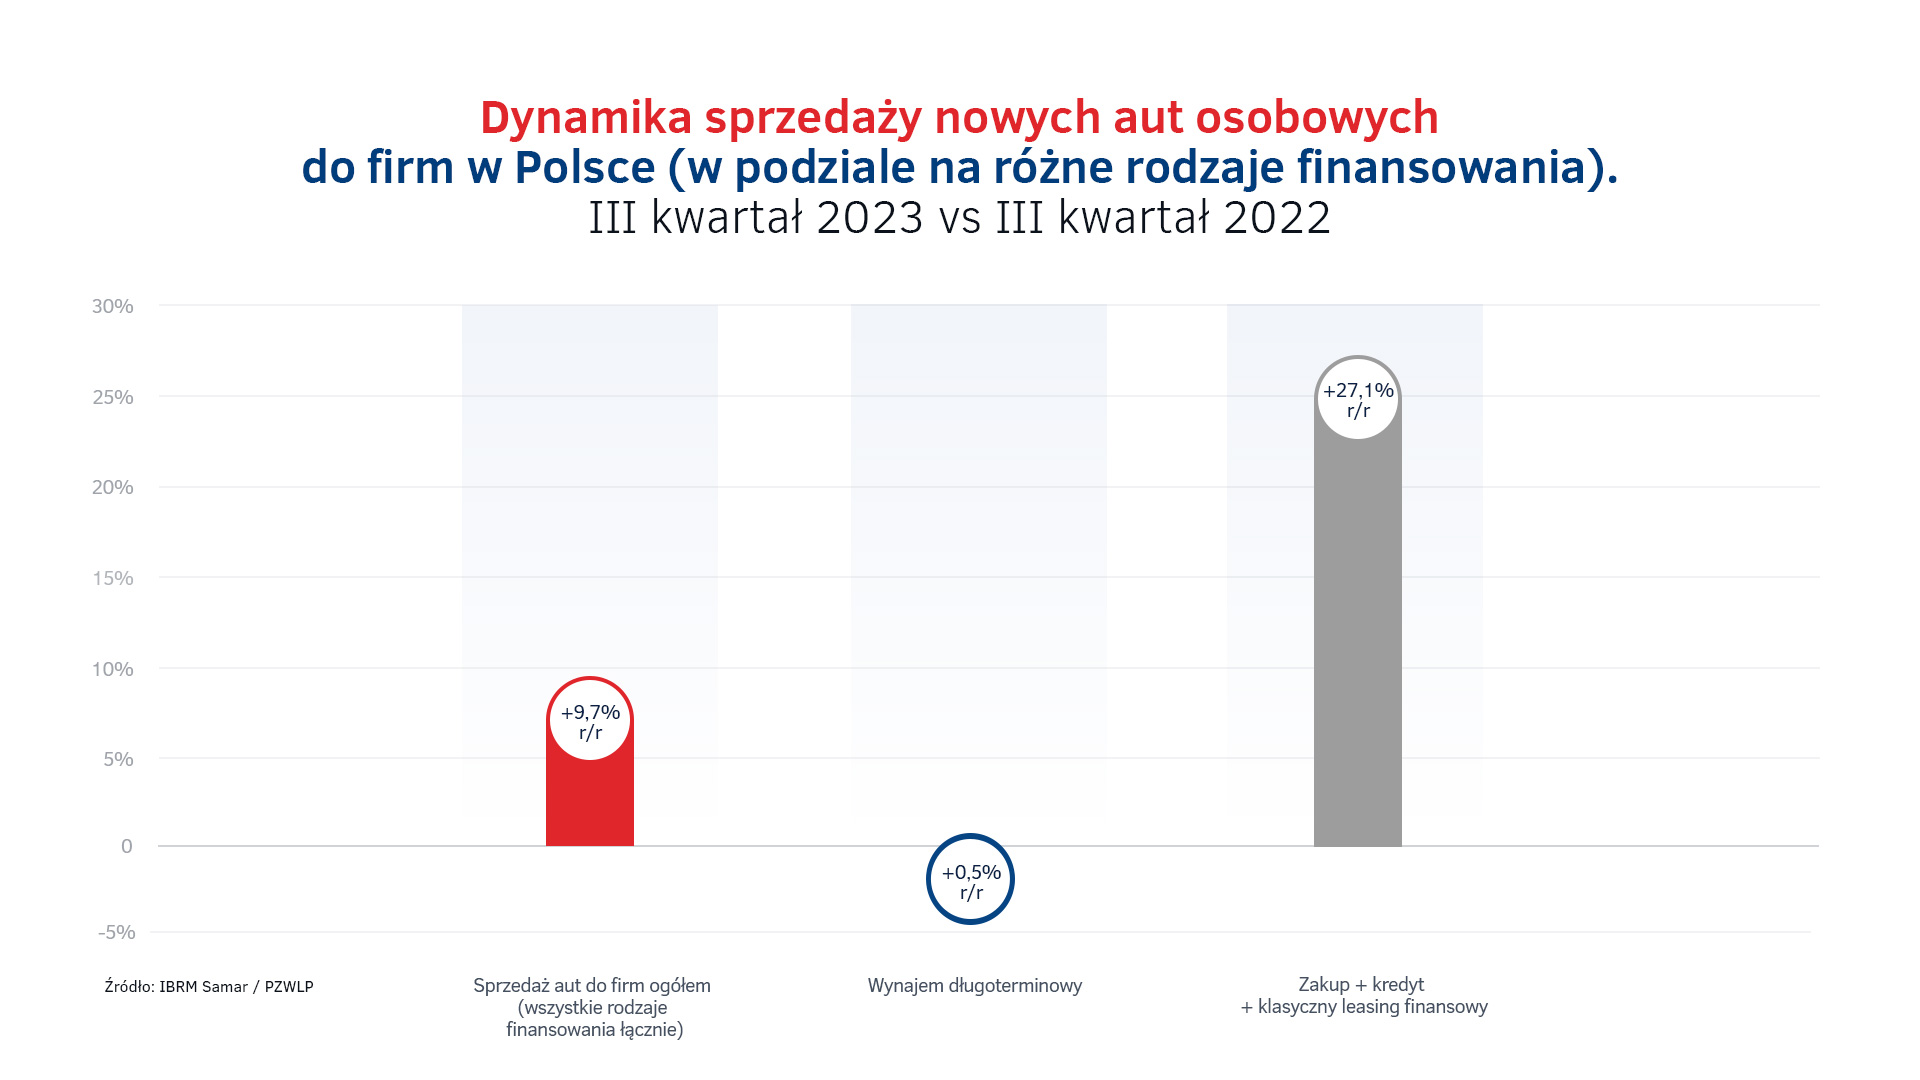 Sprzedaż aut do firm w Polsce w III kw. 2023.jpg